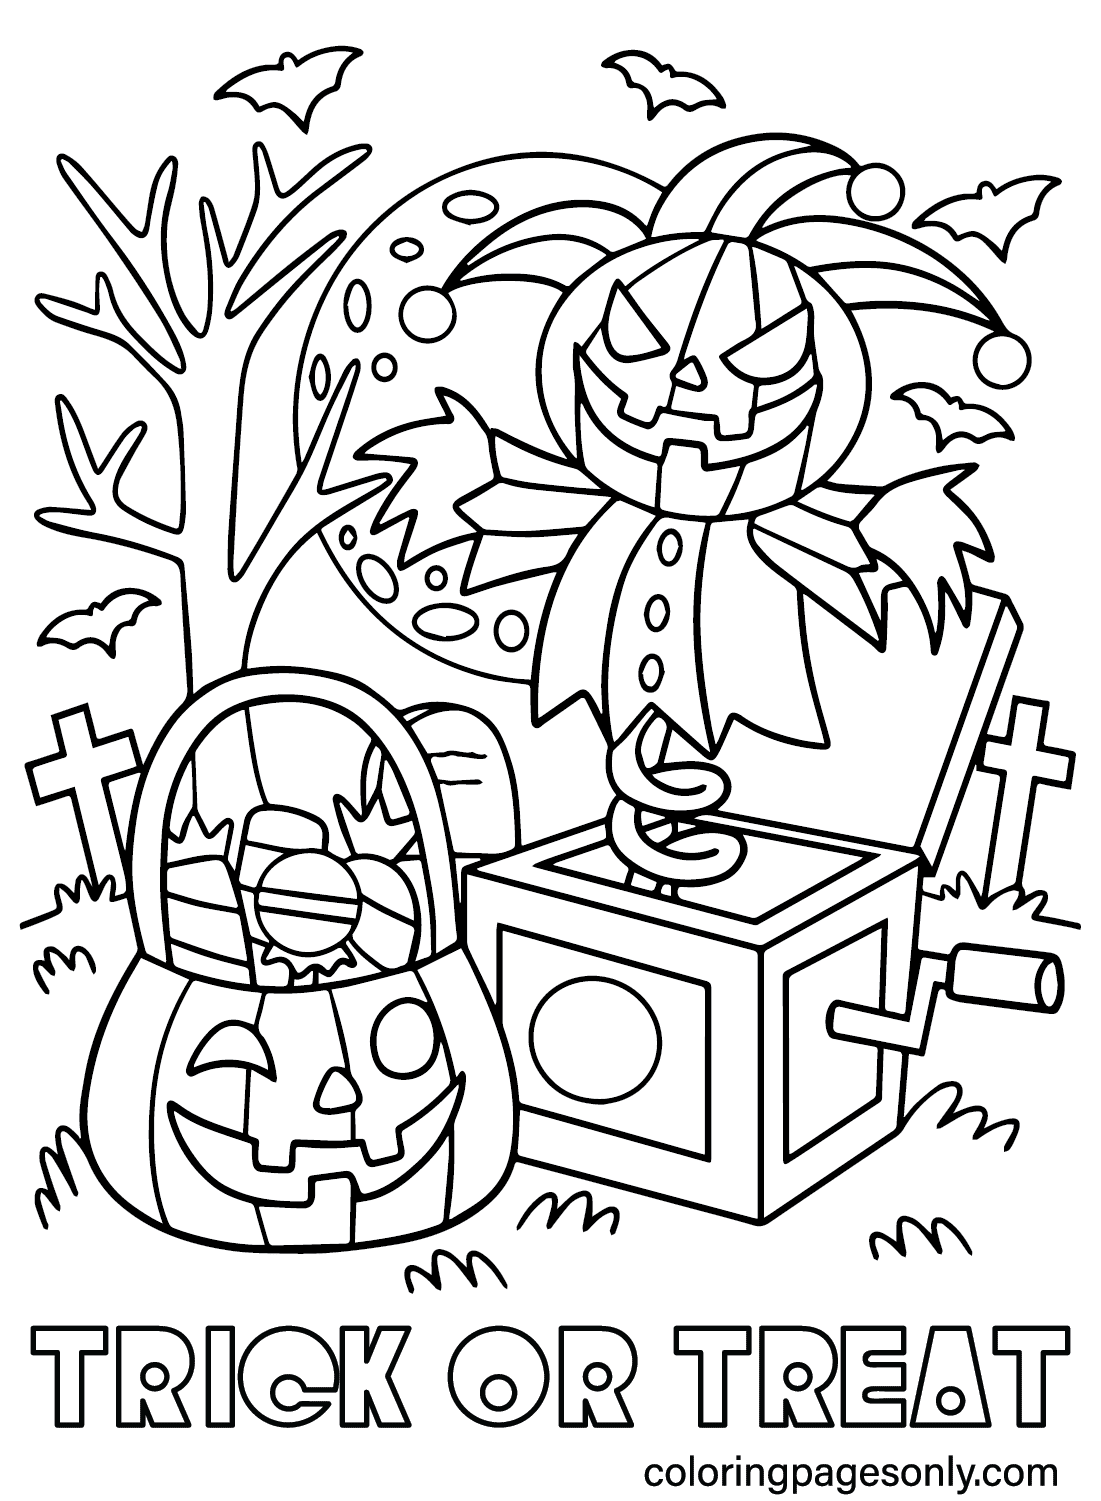 Раскраски «Кошелёк или жизнь» из Spooktacular Halloween, которые можно распечатать